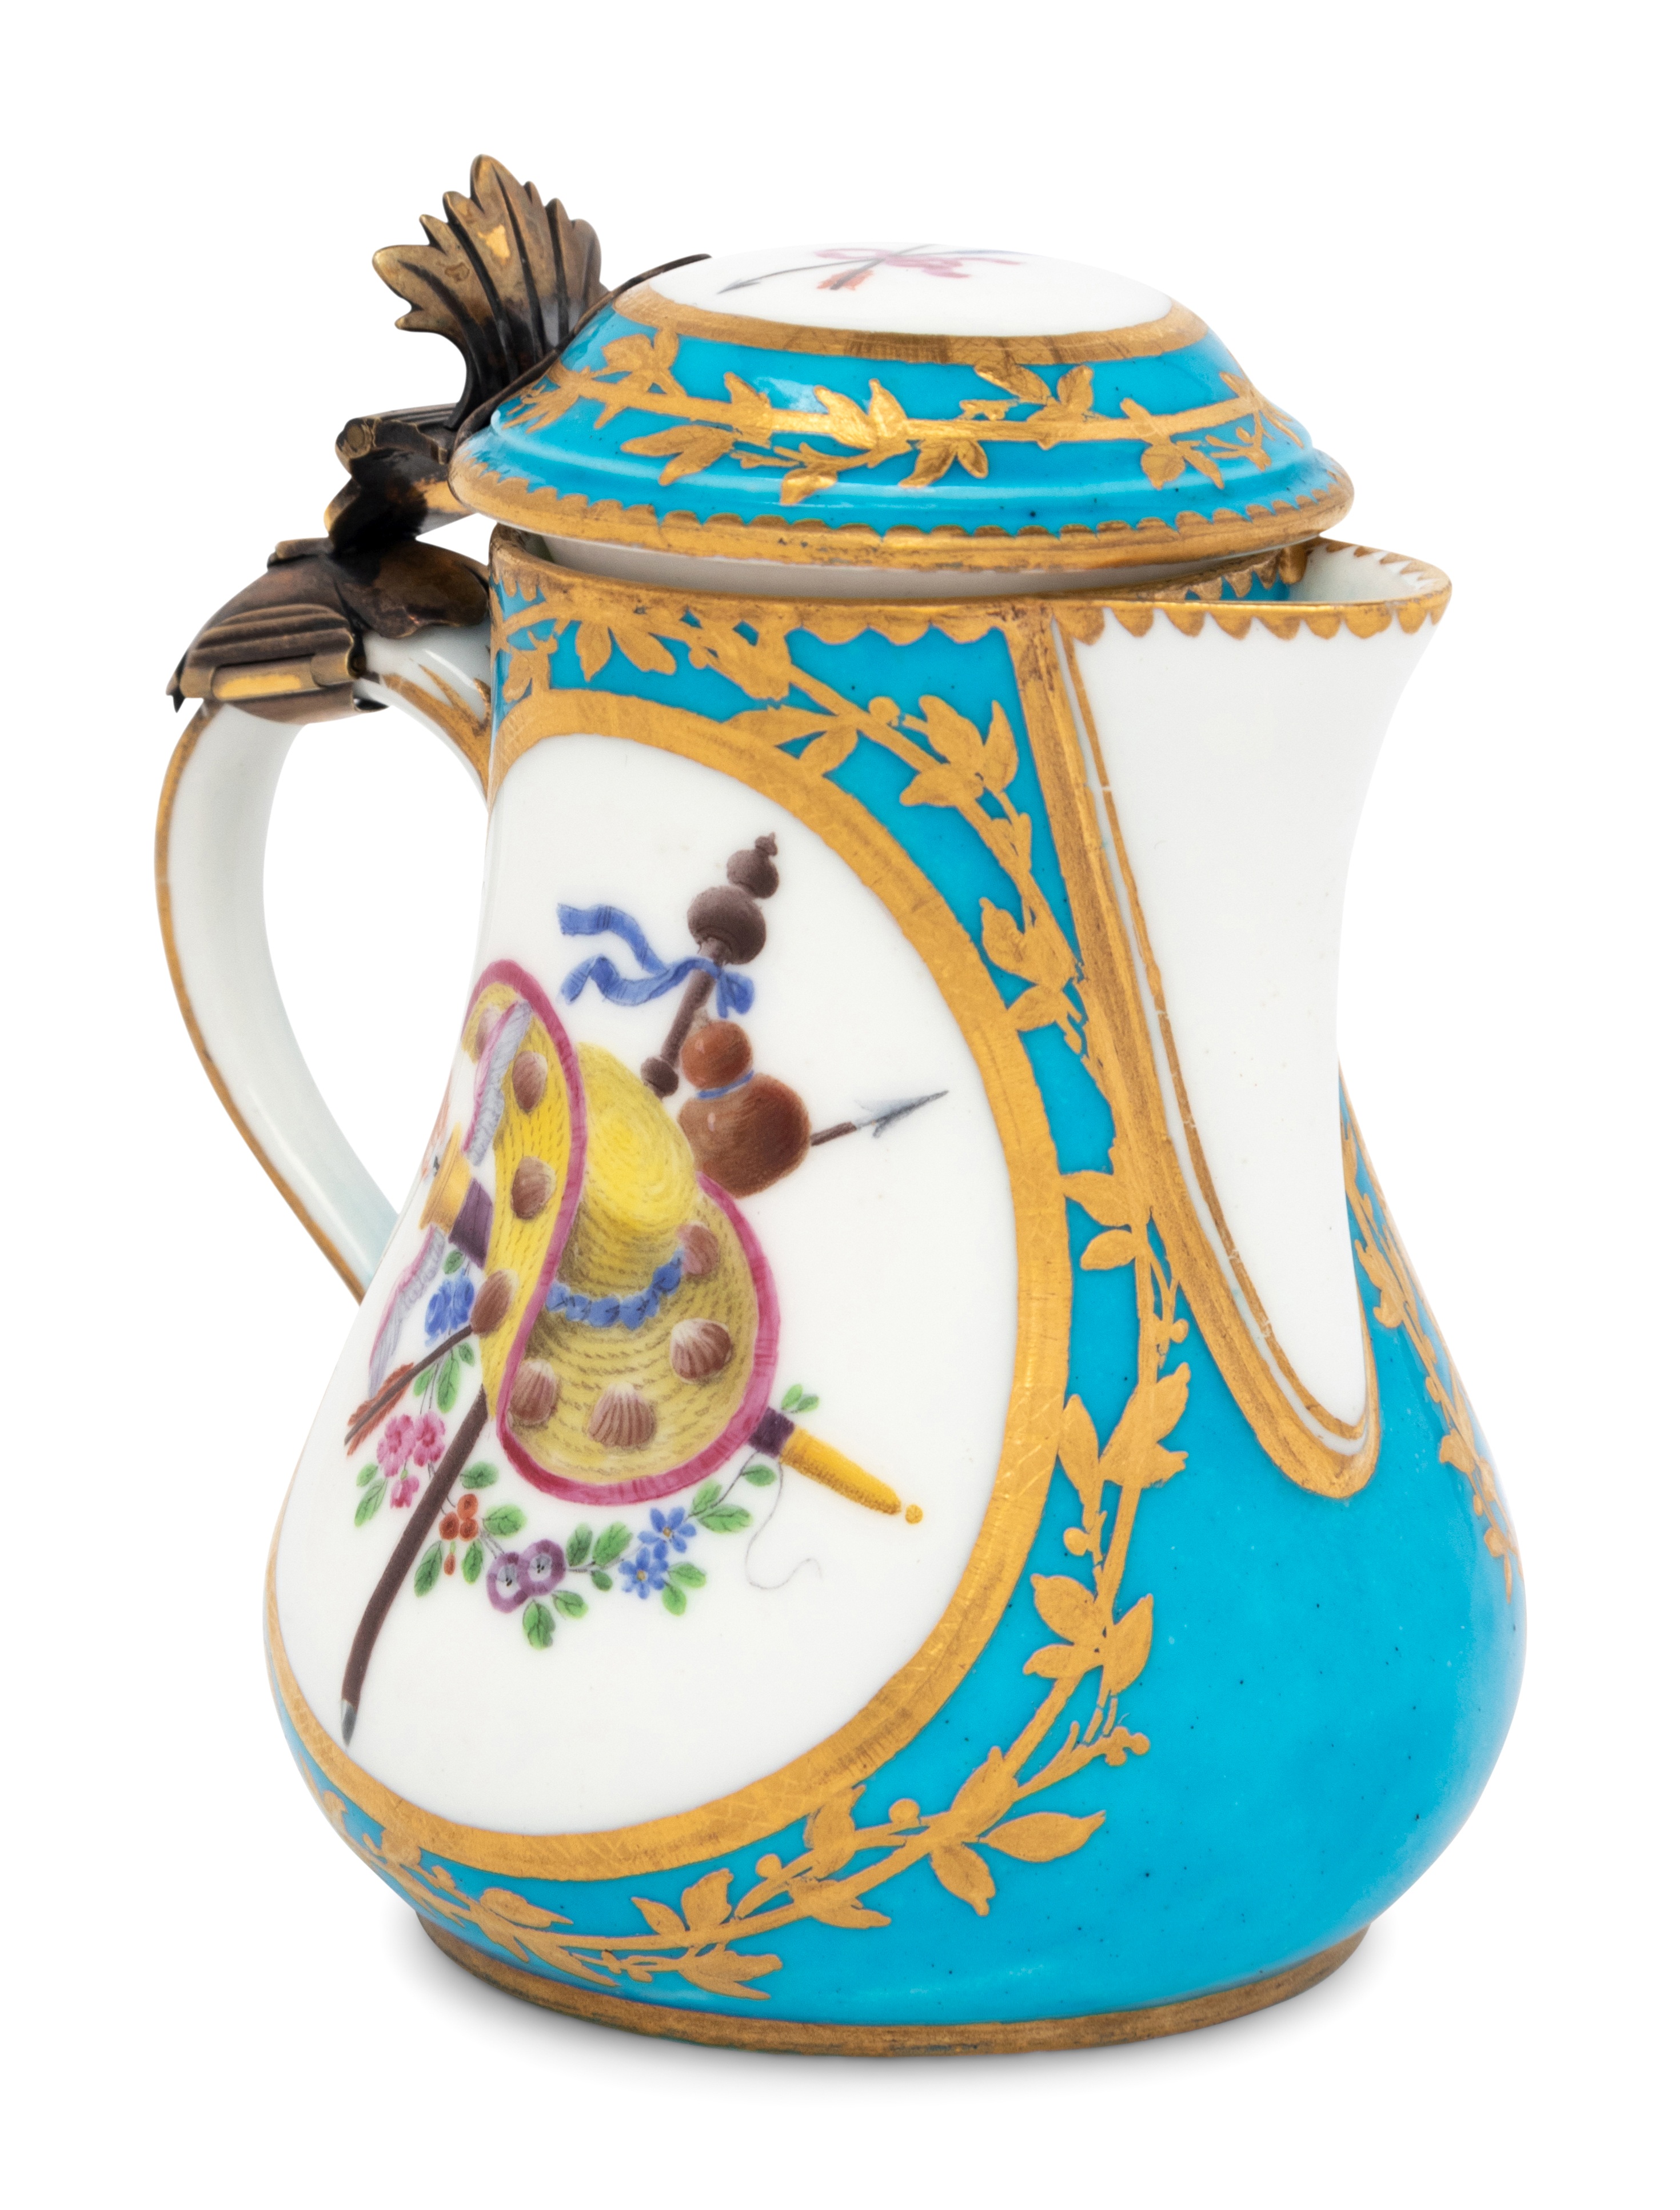 A Sevres Silver-Gilt Mounted Bleu Celeste Porcelain Hot Milk Jug and Cover (Pot a Lait 'Duvaux') - Image 9 of 29